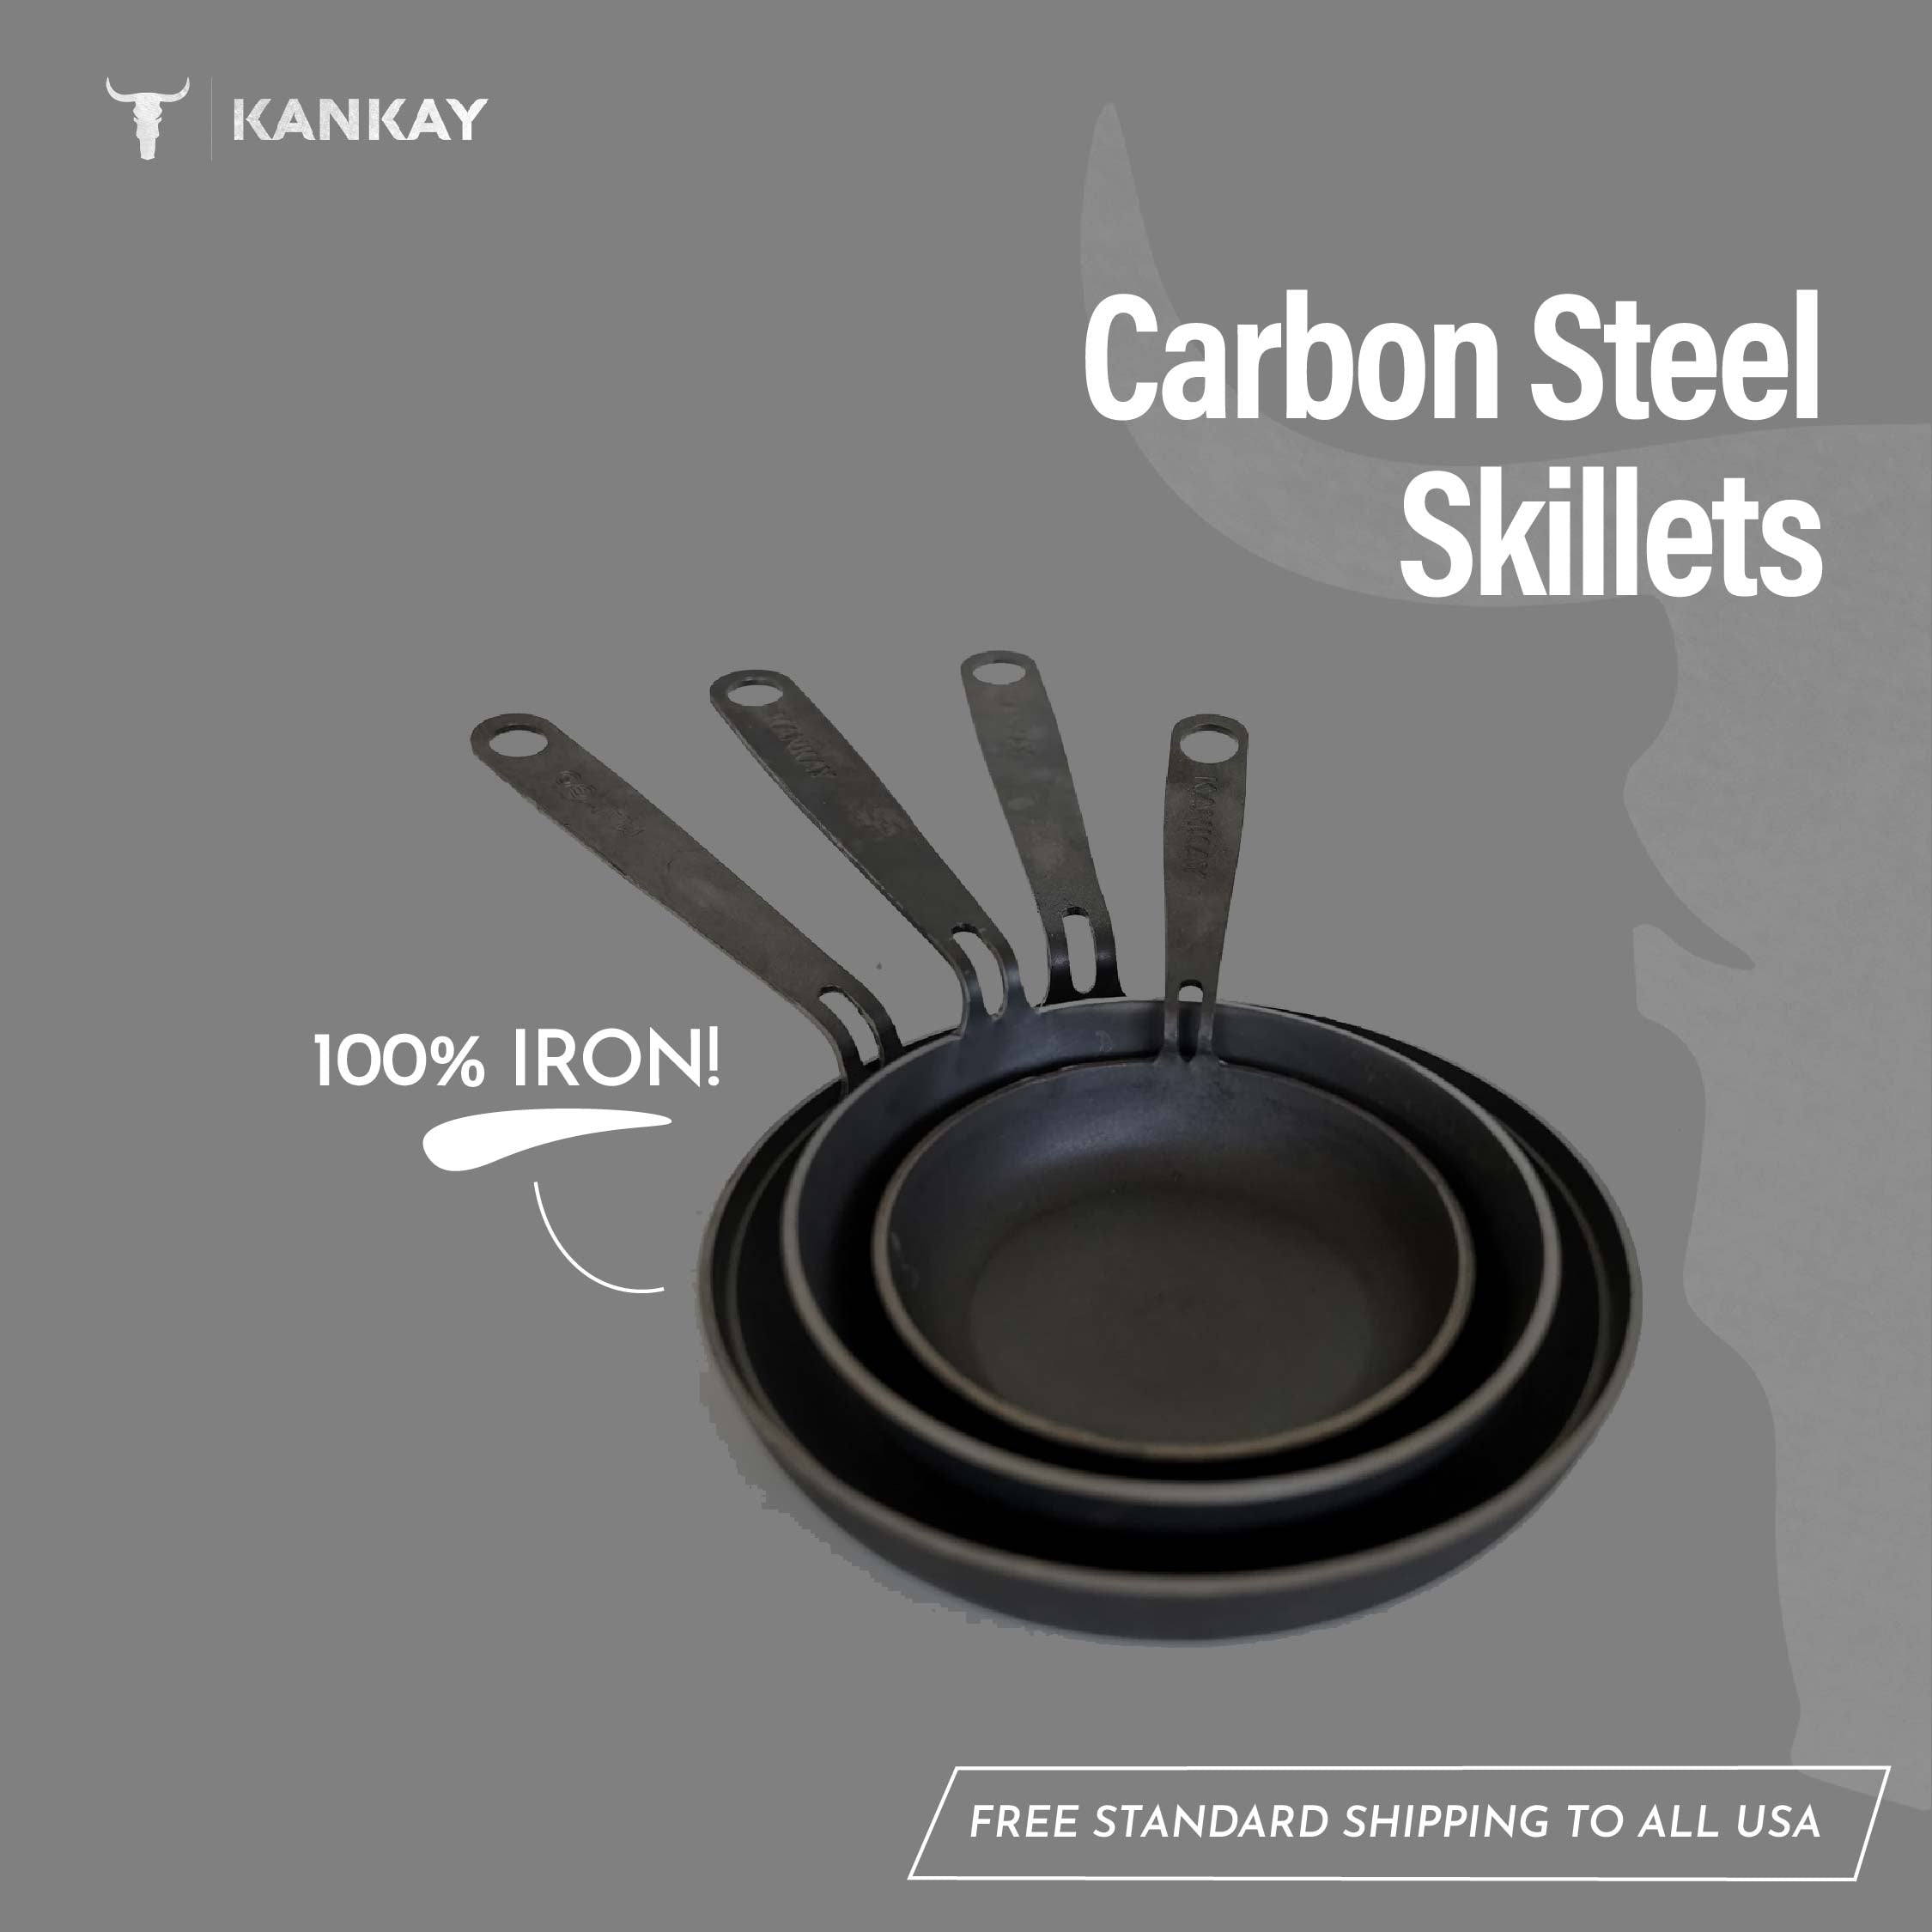 Buy 4 Carbon Steel Skillet & get 1 for free online